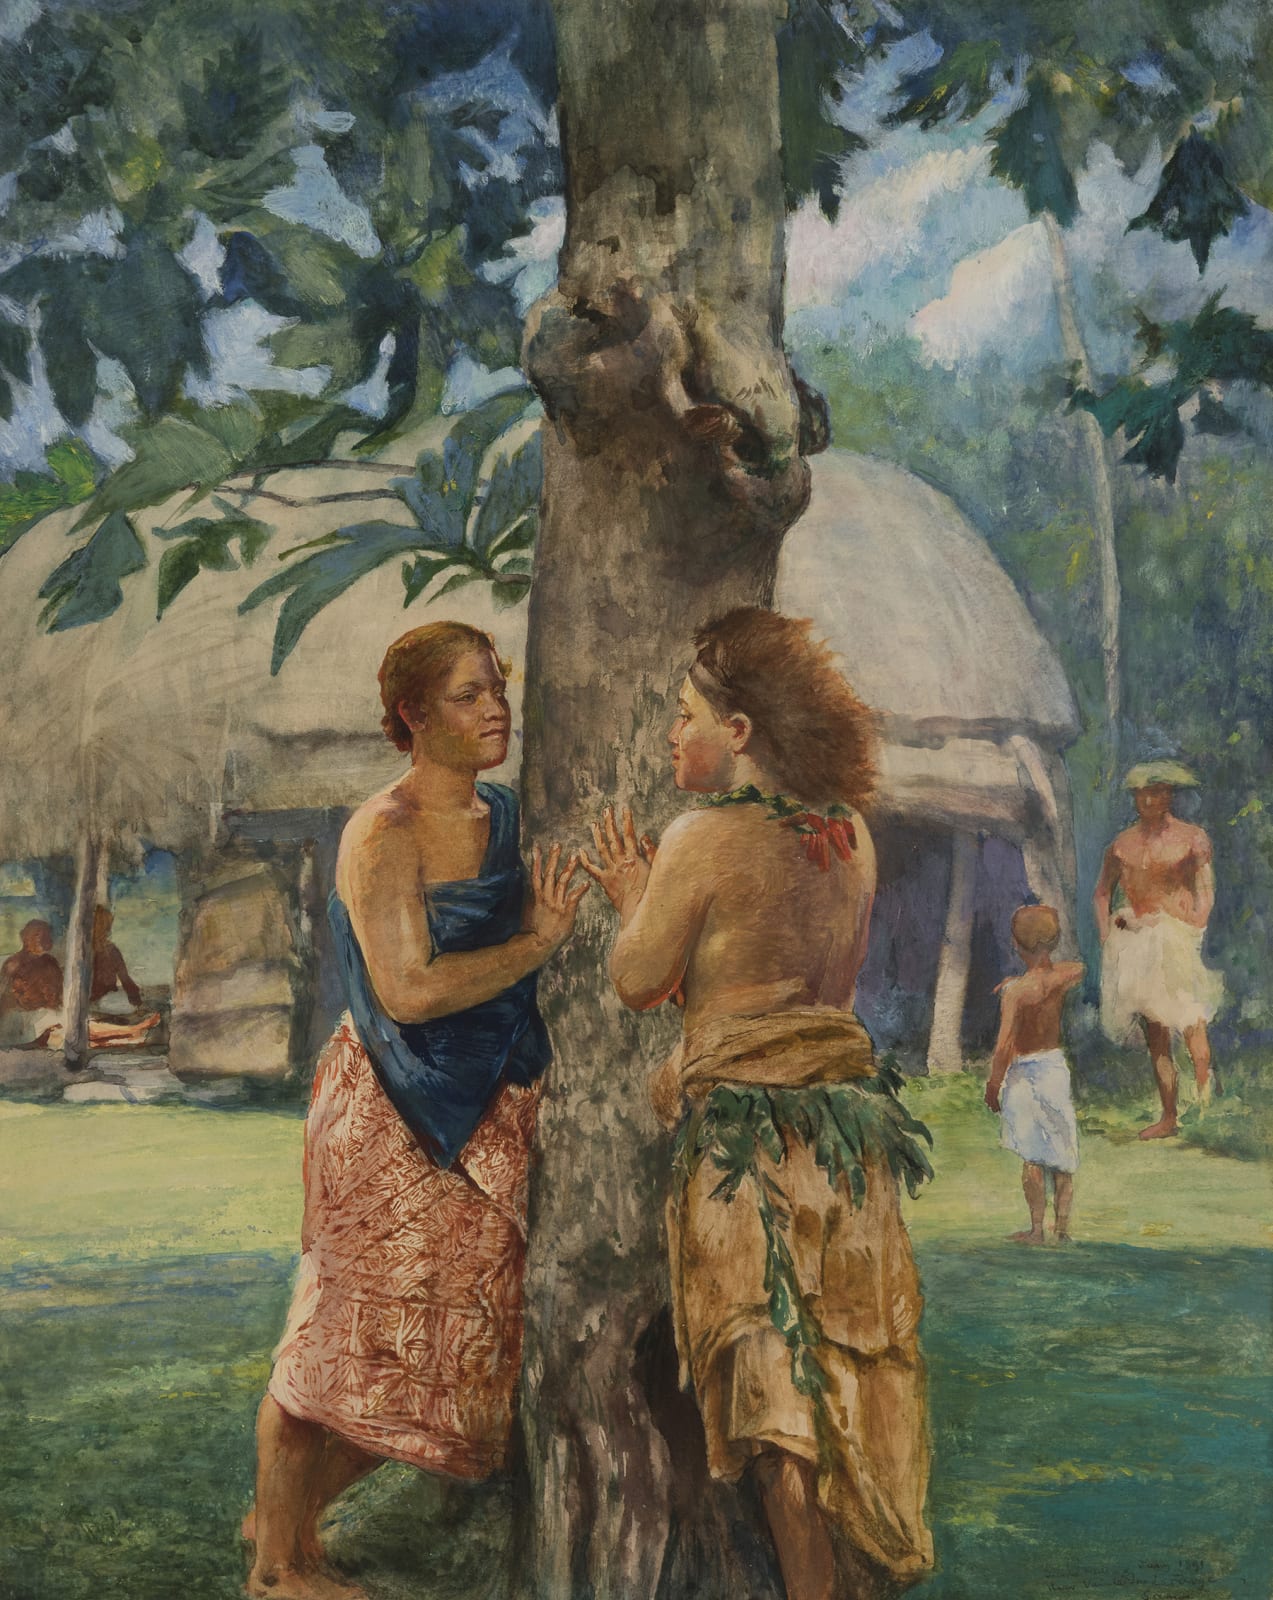 John La Farge, Portrait of Faase, The Taupo of Fagaloa Bay, Samoa, 1891